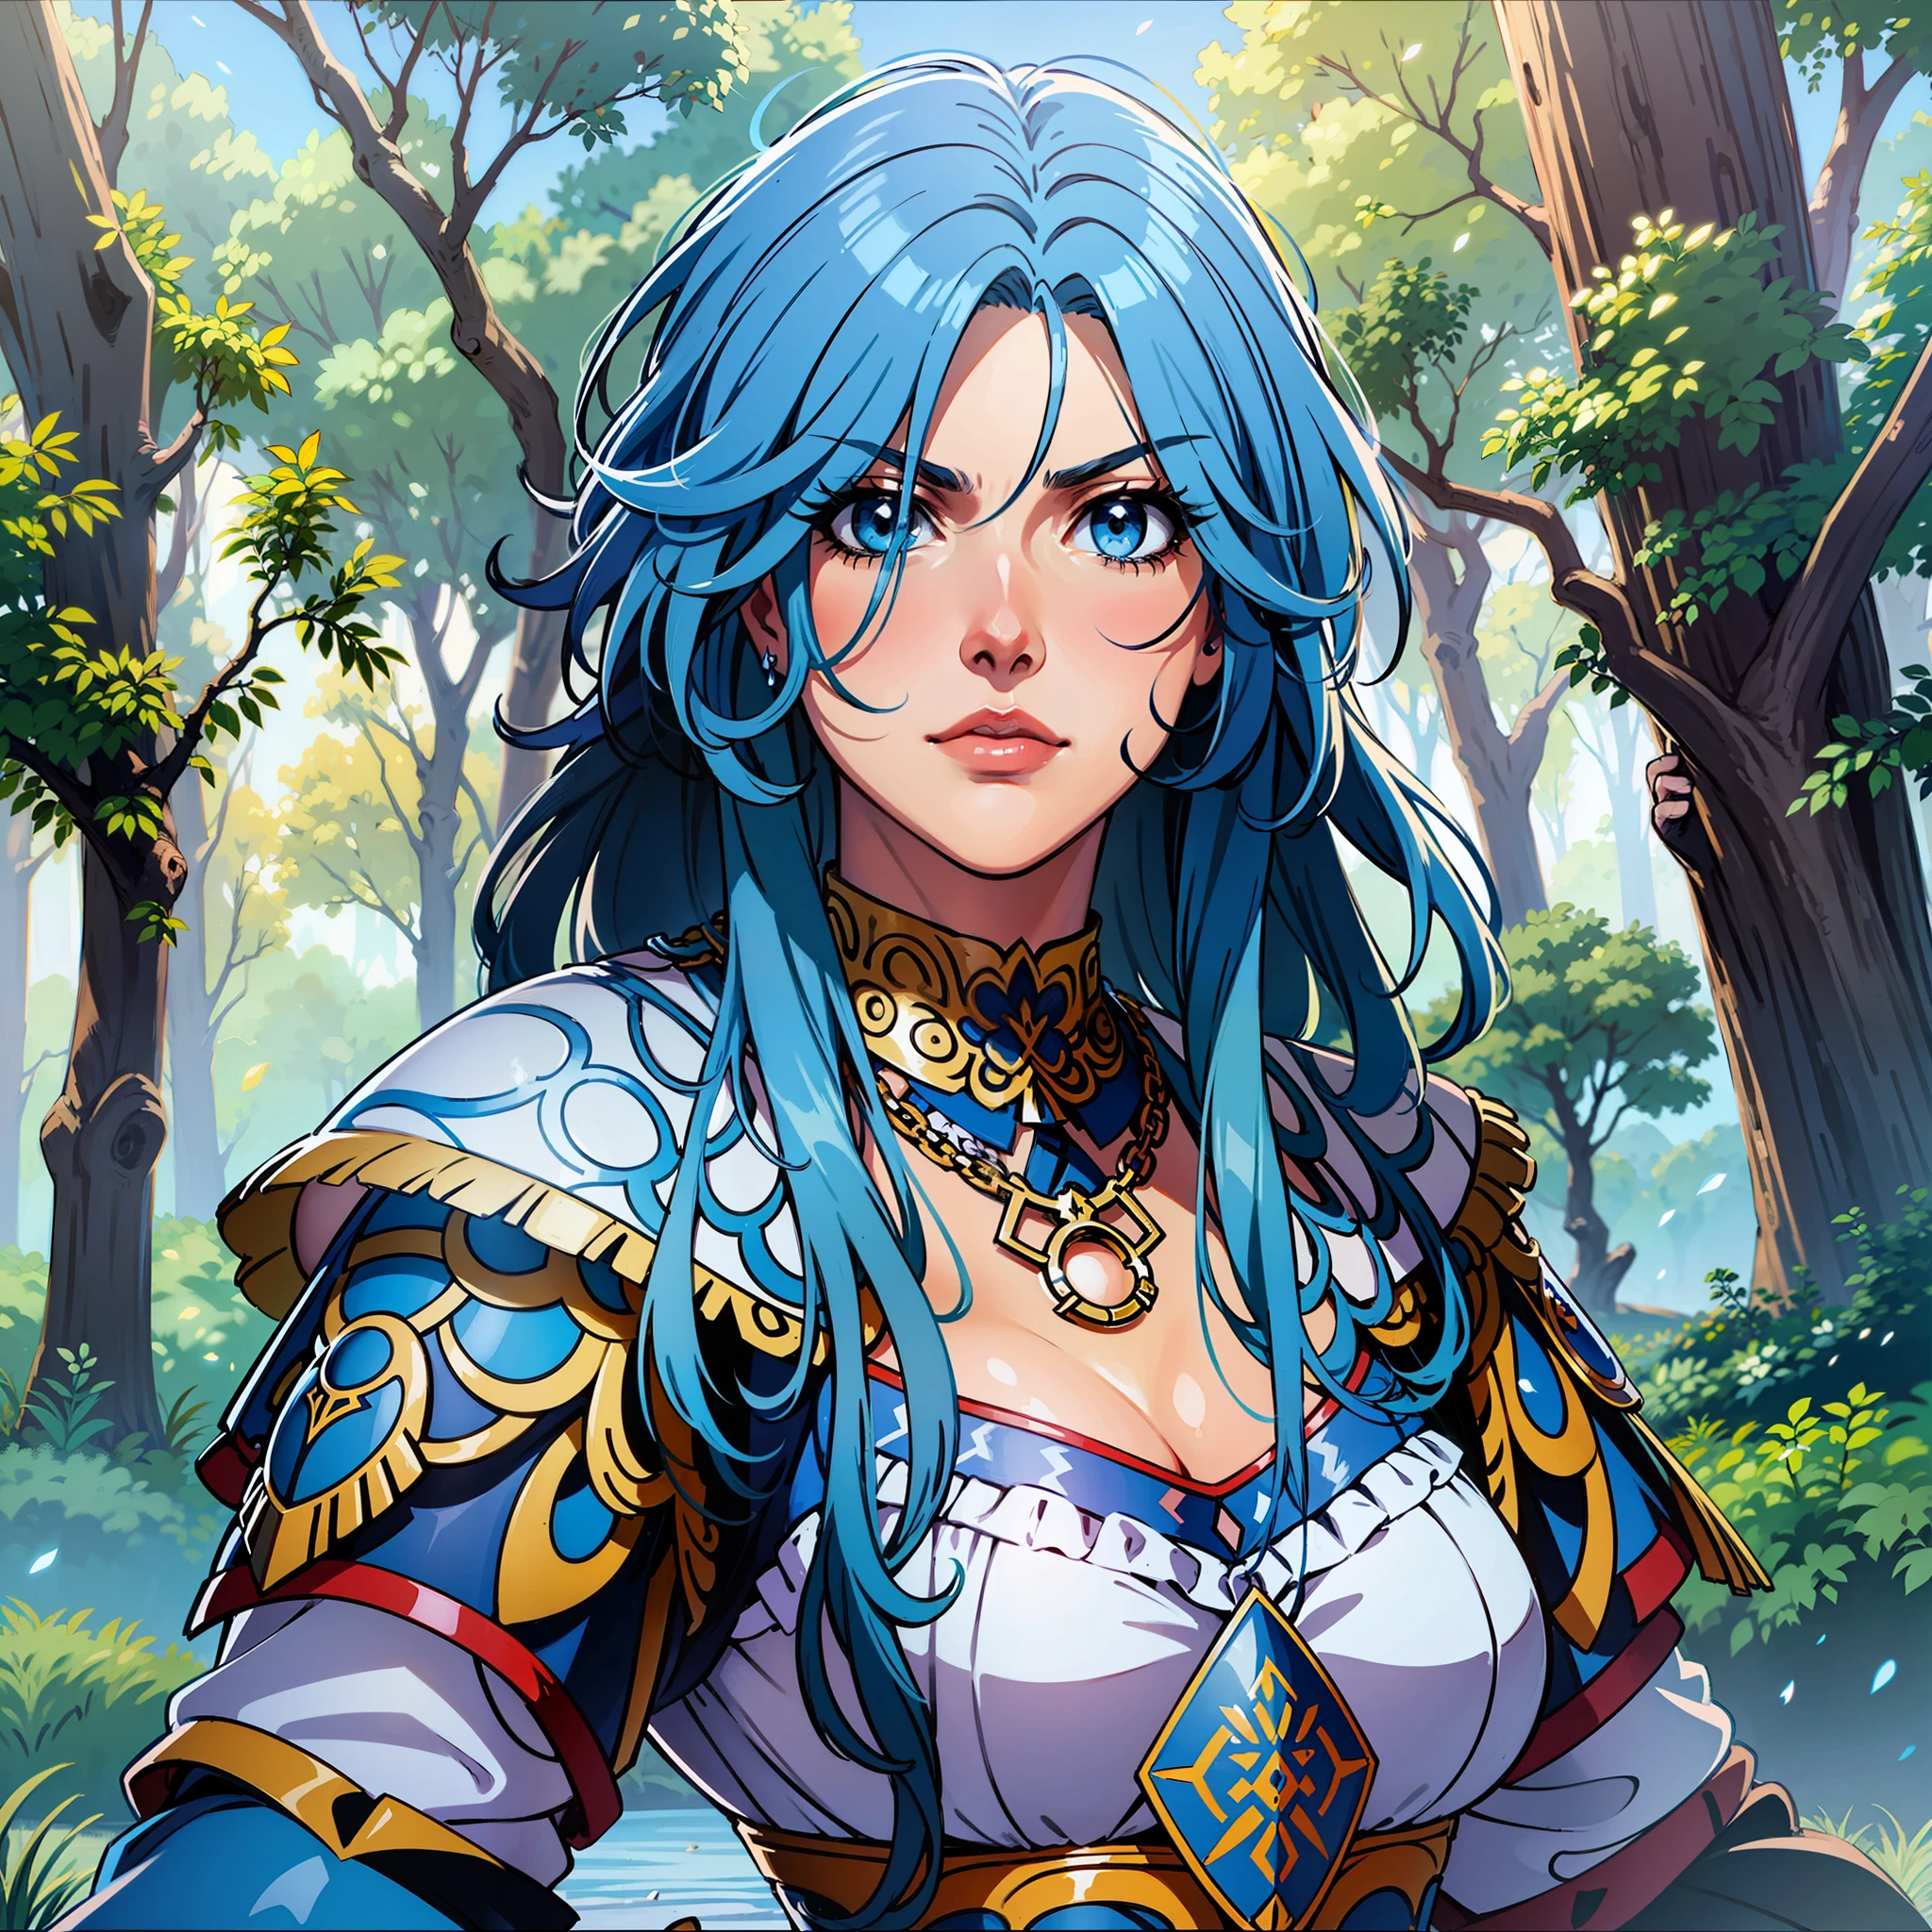 深蓝色头发的女战士, 蓝眼睛, 长发, 生气的脸, 蓝甲+白色的+讲话, 蓝色衣服+白色的s+讲话s, 武士王朝7, 动漫风格, 角色扮演, 角色扮演 fantasia, 中世纪幻想